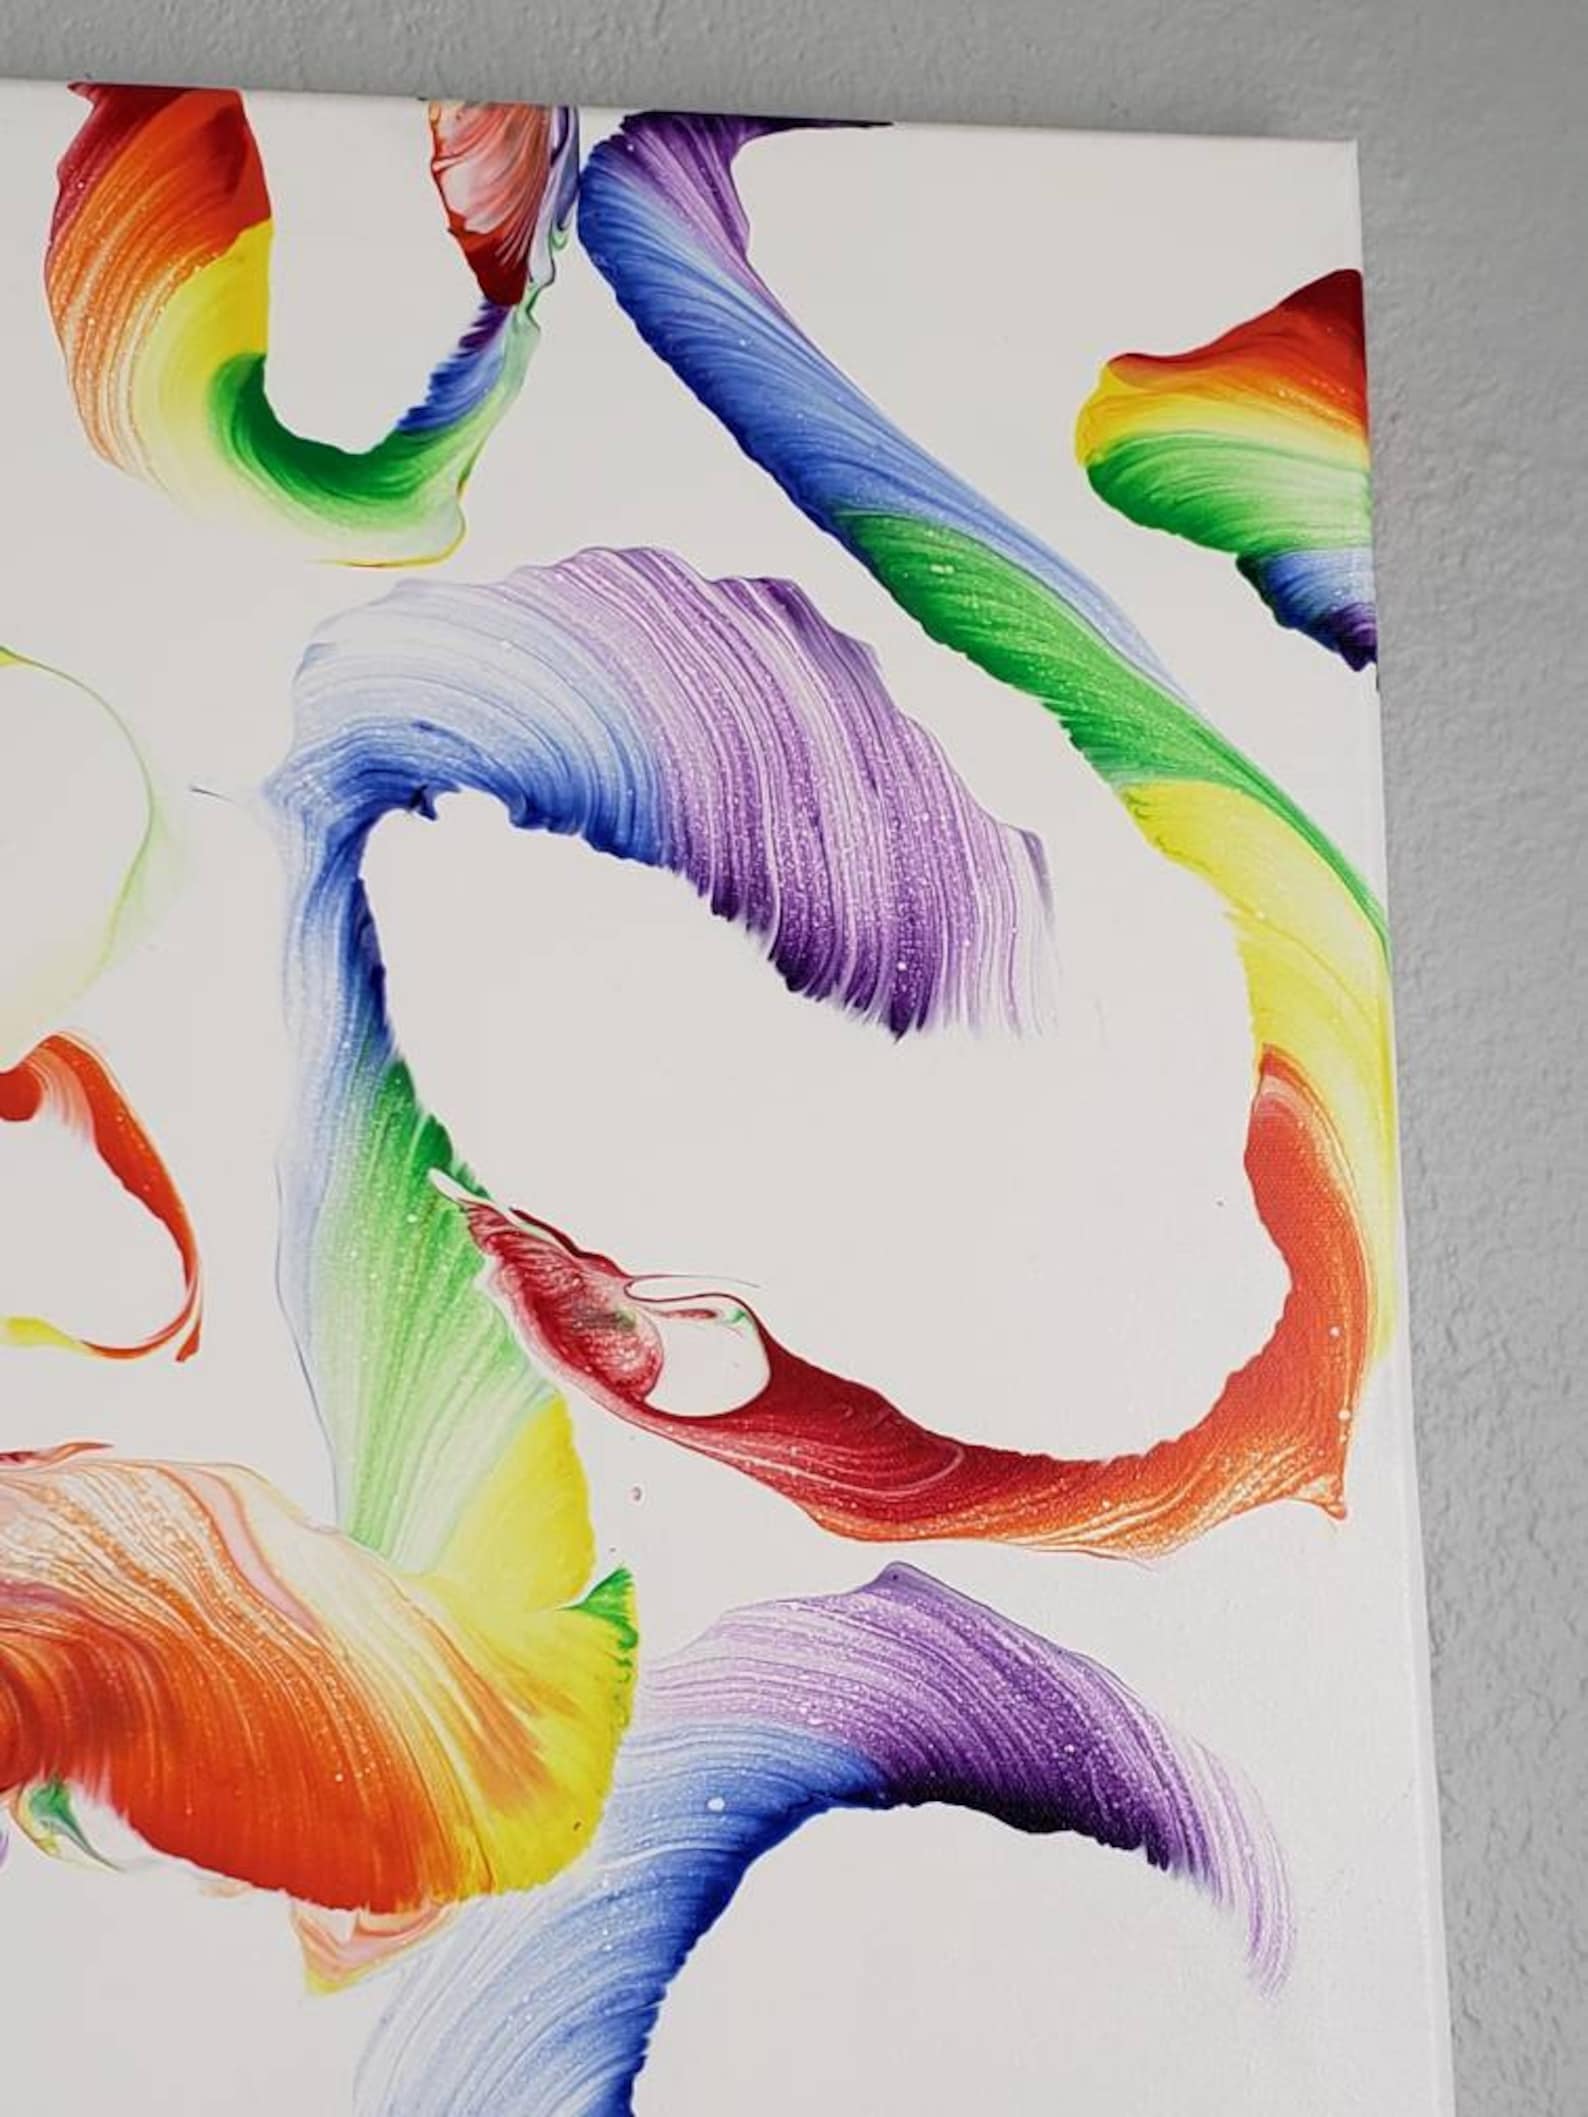 18x24 Abstract acrylic rainbow painting | Etsy